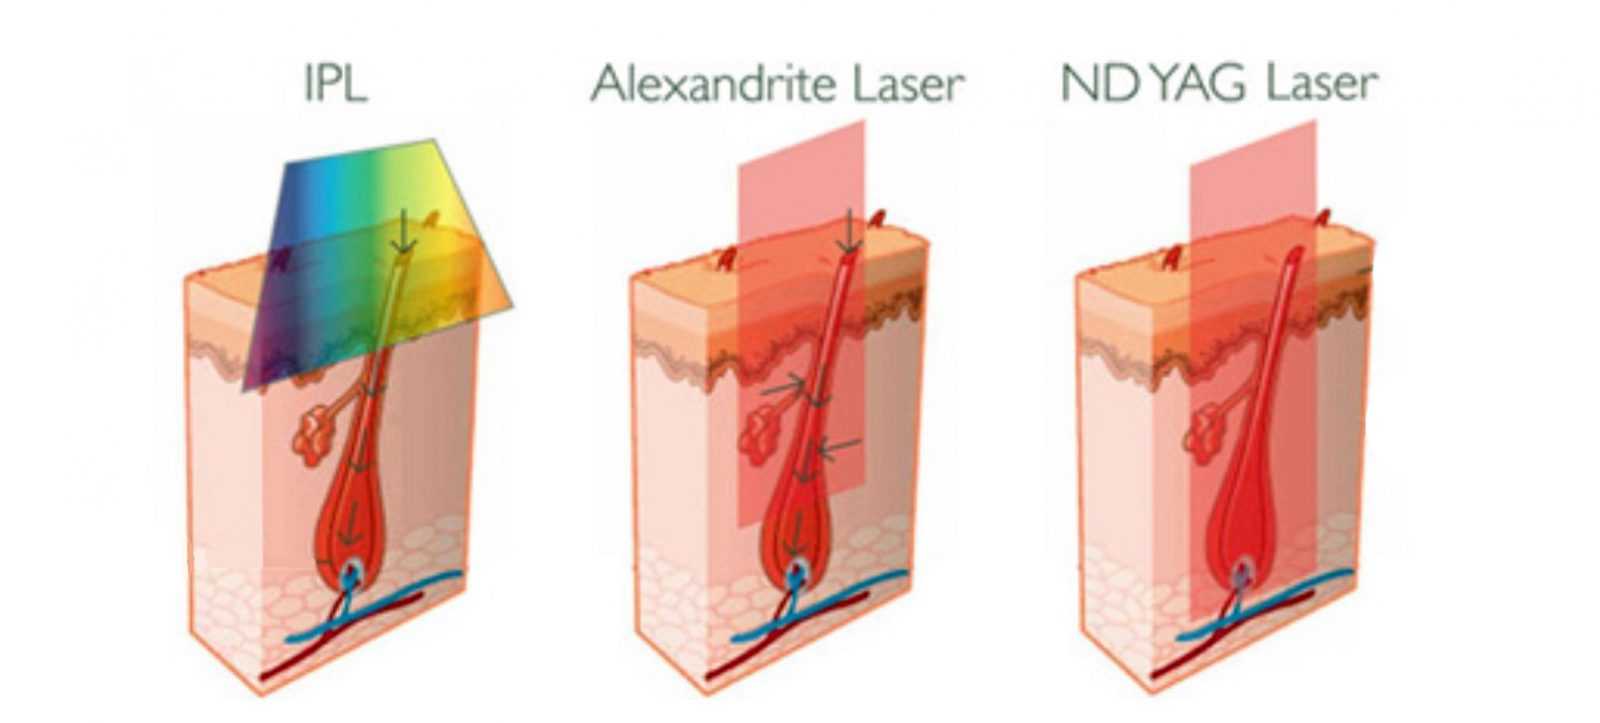 Какой лазер лучше и эффективнее для удаления волос с тела